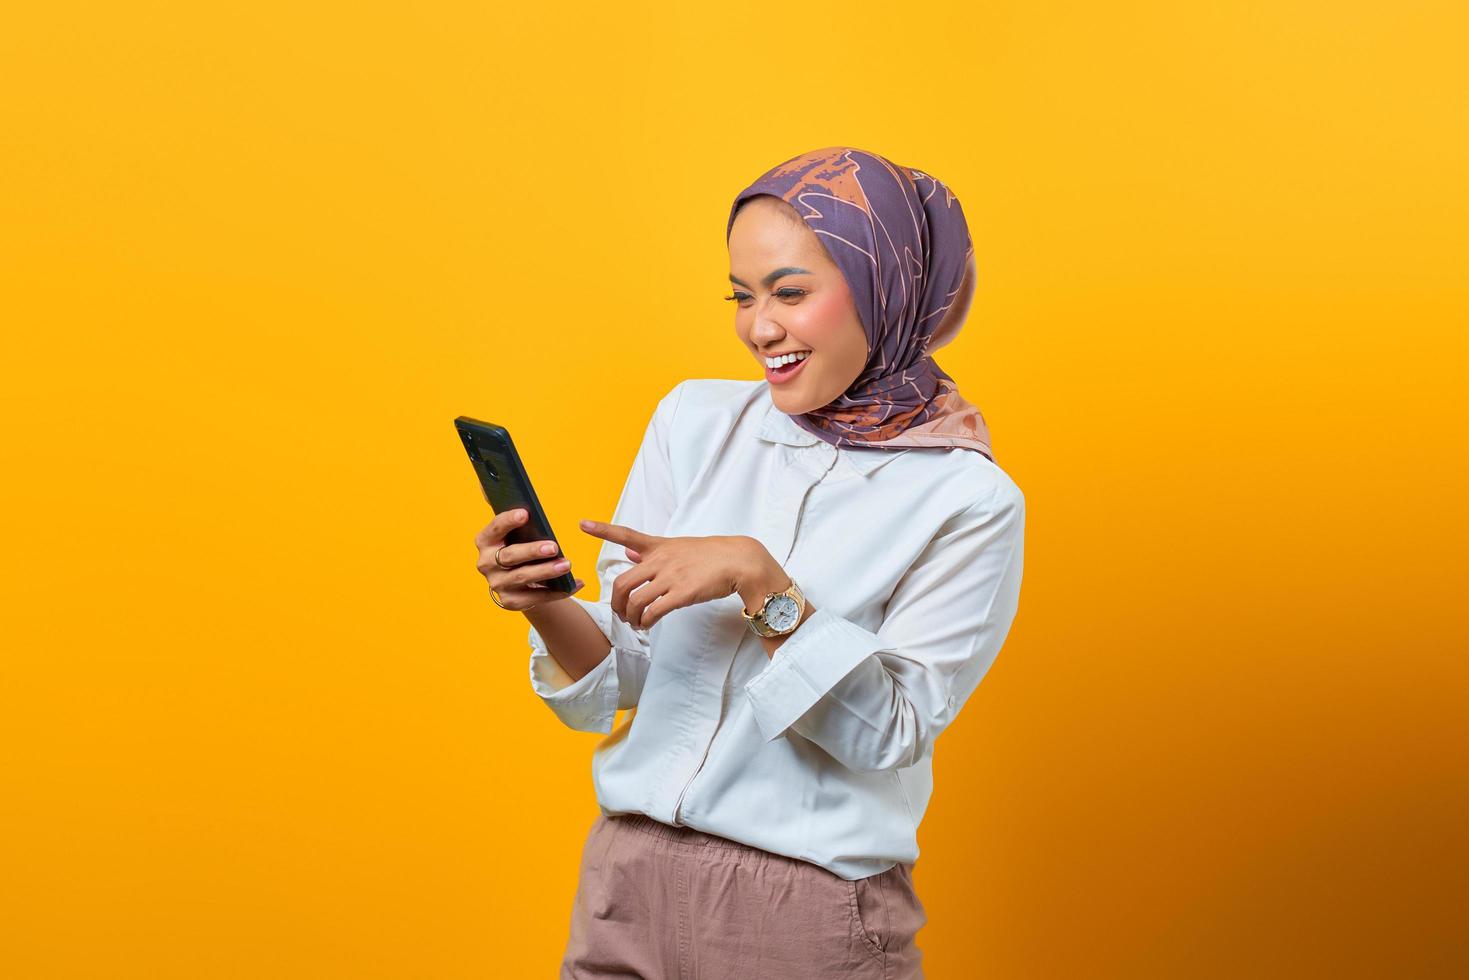 femme asiatique joyeuse regardant un smartphone recevant de bonnes nouvelles photo